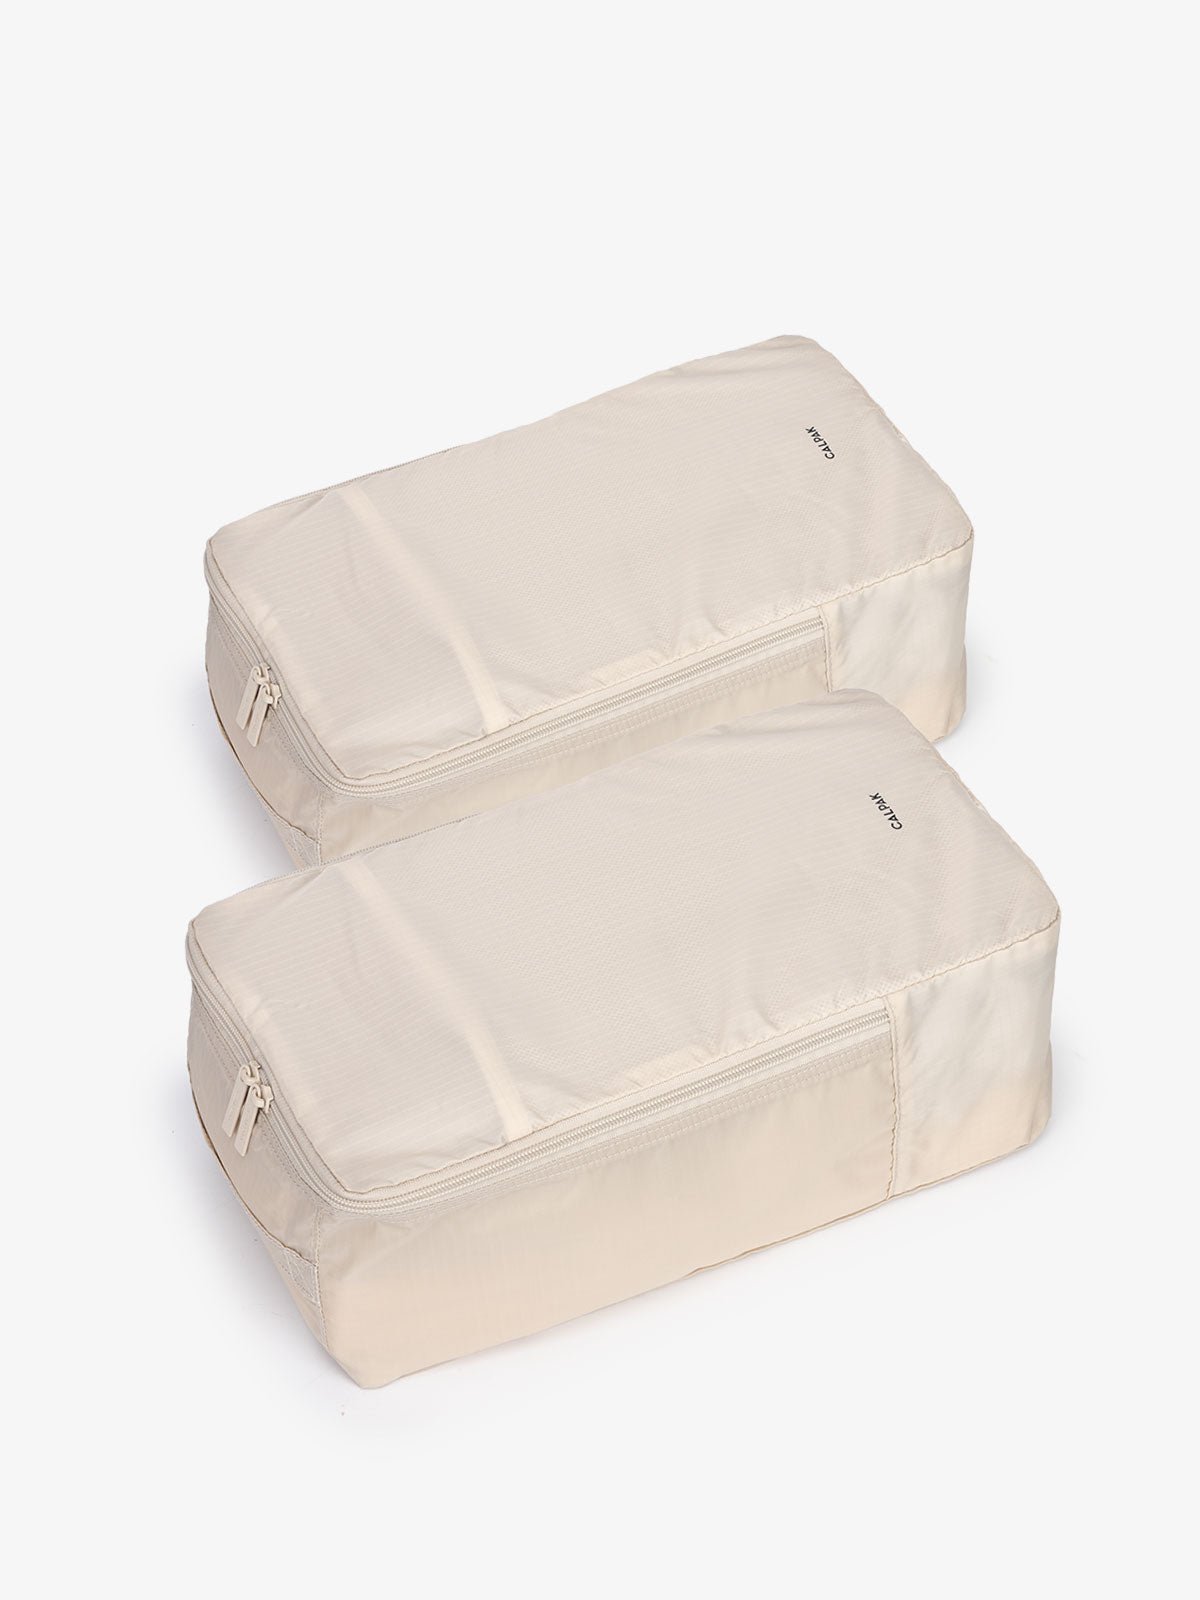 CALPAK Compakt shoe bag set in beige